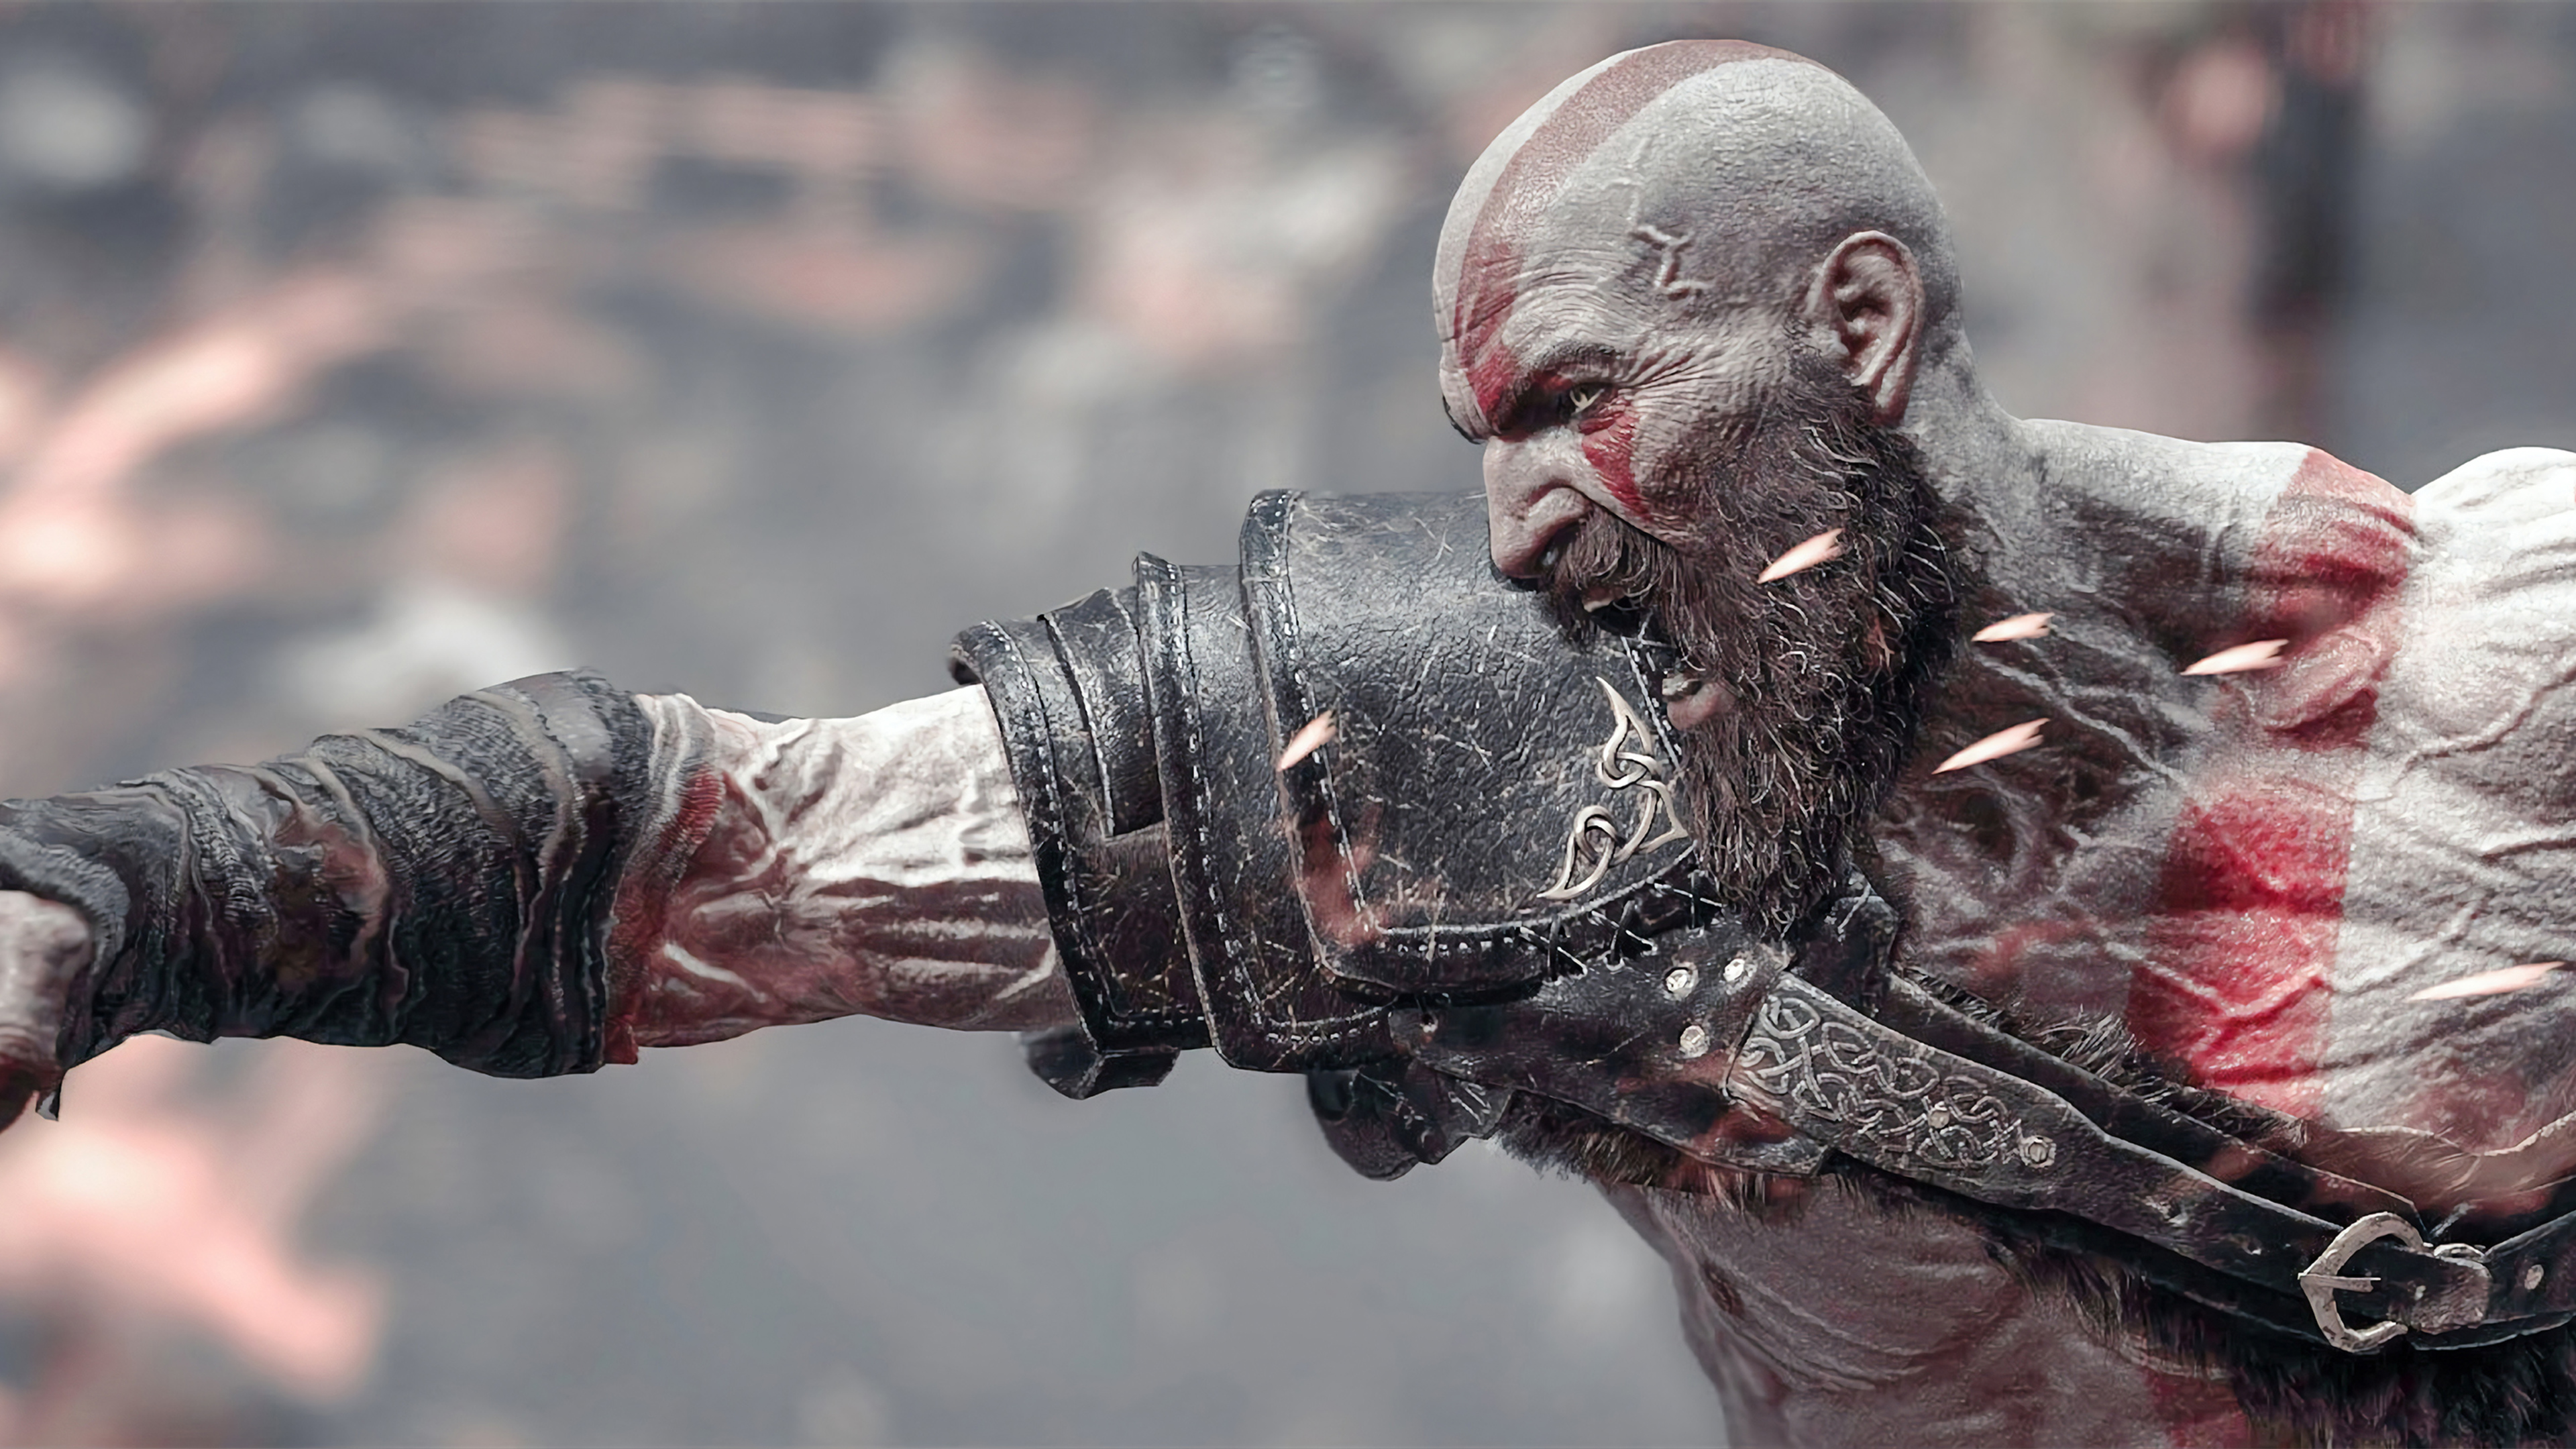 Wallpapers: Bạn đang tìm kiếm hình nền hoàn hảo cho thiết bị của mình? Tại sao không xem thử các hình nền tuyệt đẹp về Kratos và God of War ở đây? Chắc chắn bạn sẽ tìm thấy điều gì đó phù hợp với phong cách của mình.